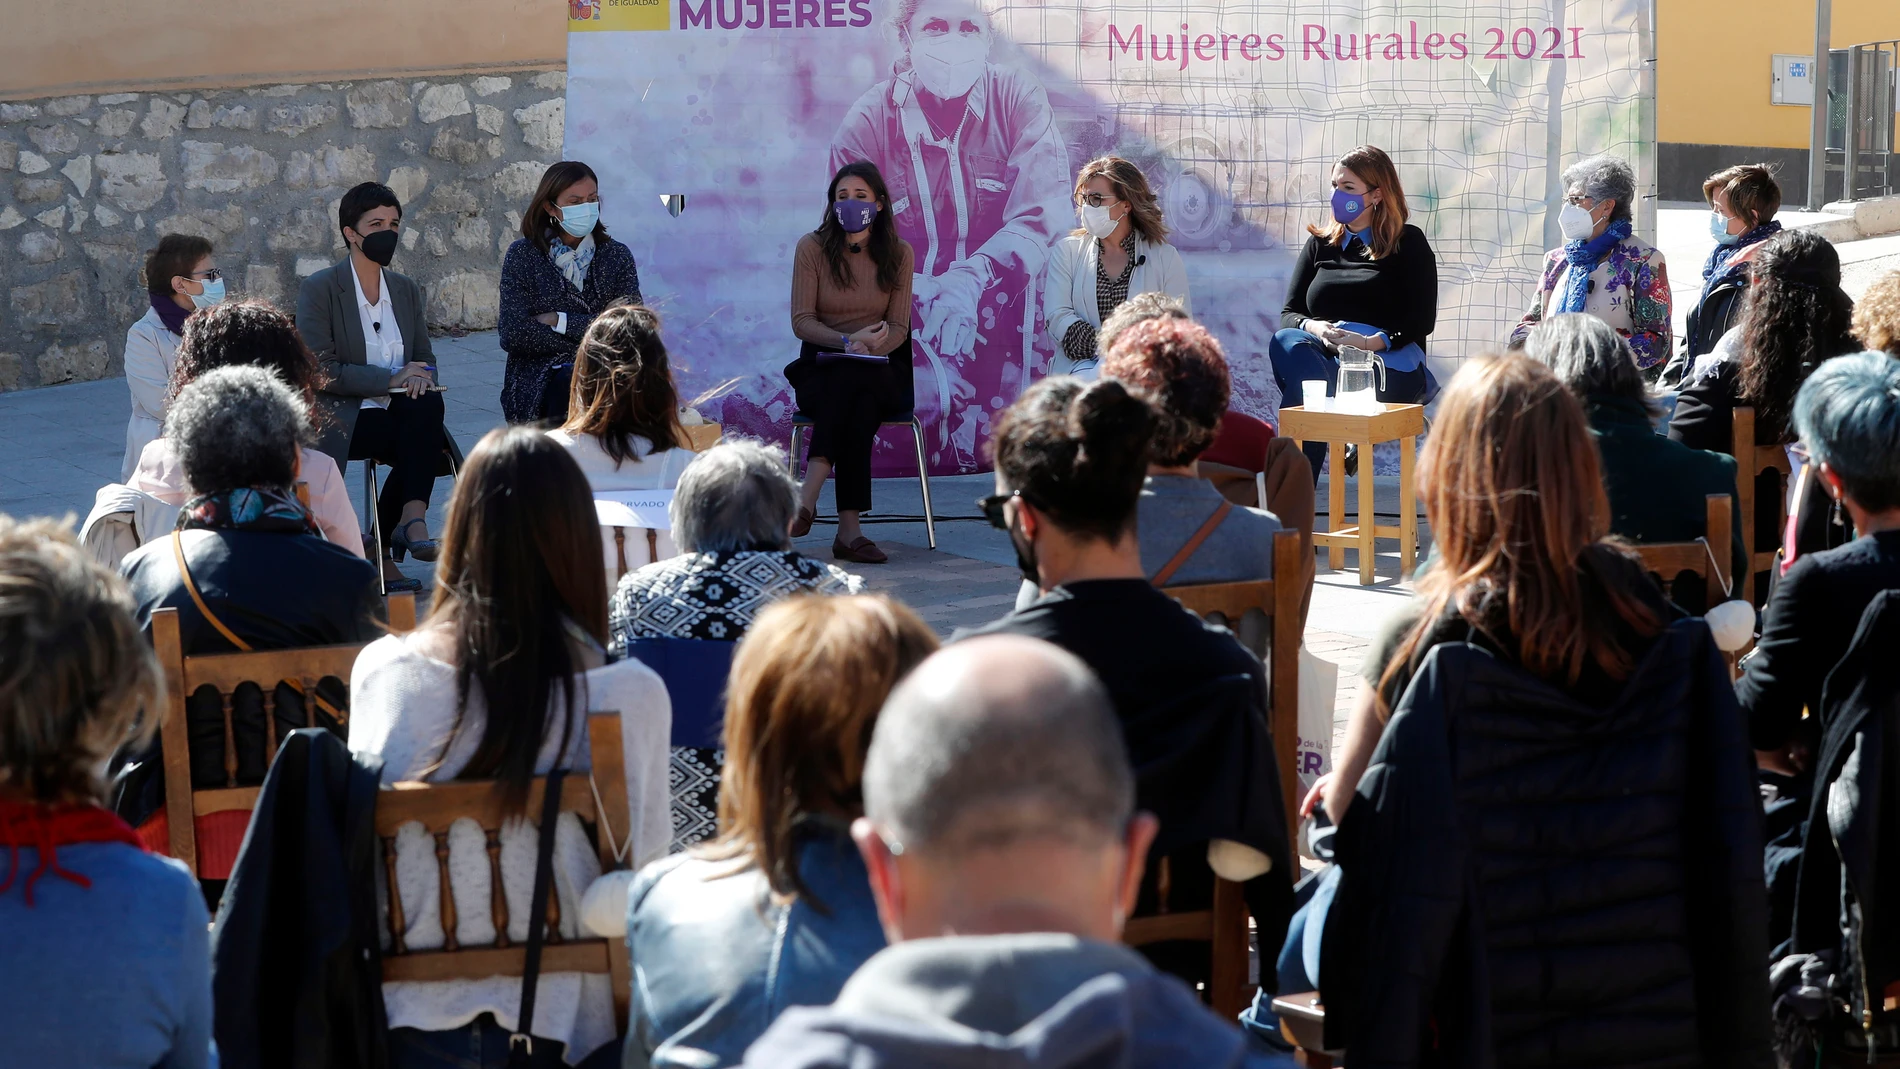 La directora del Instituto de las Mujeres, Toni Morillas (2i); la ministra de Igualdad, Irene Montero (4i), y la secretaria de Estado de Igualdad y Contra la Violencia de Género, Ángela Rodríguez (3d), durante el acto por el Día Internacional de las Mujeres Rurales